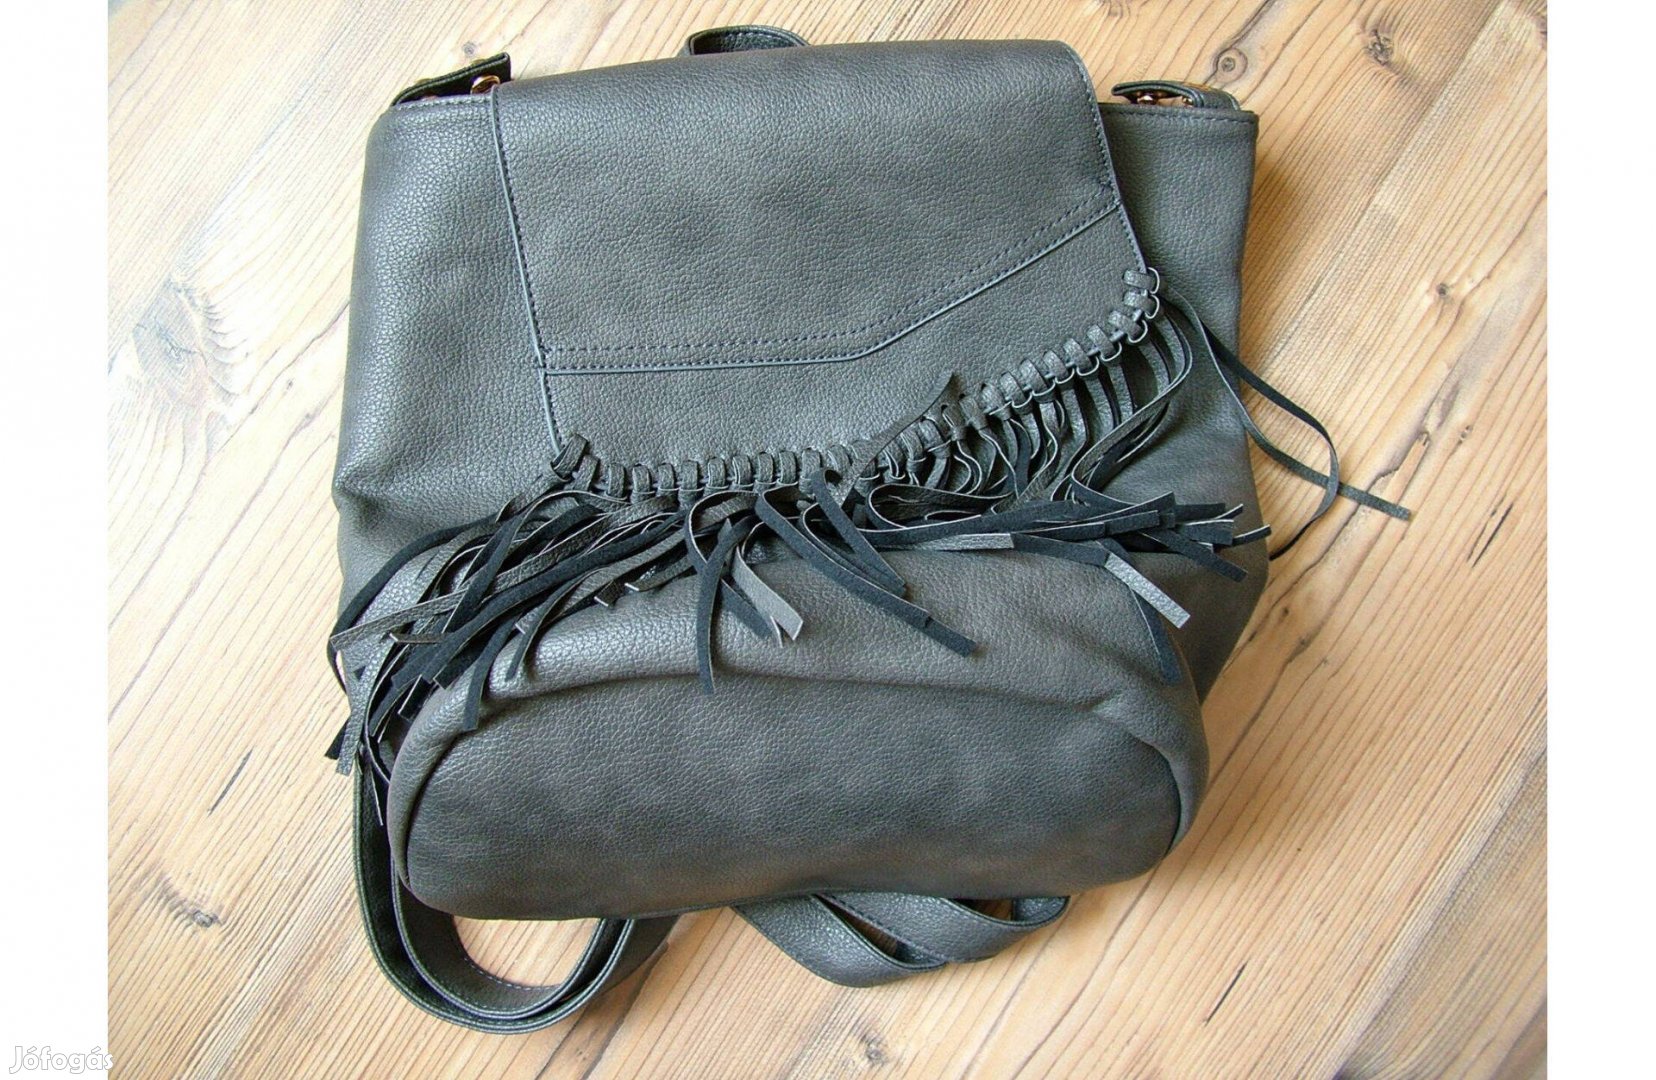 Új női táska hátizsákként is használható